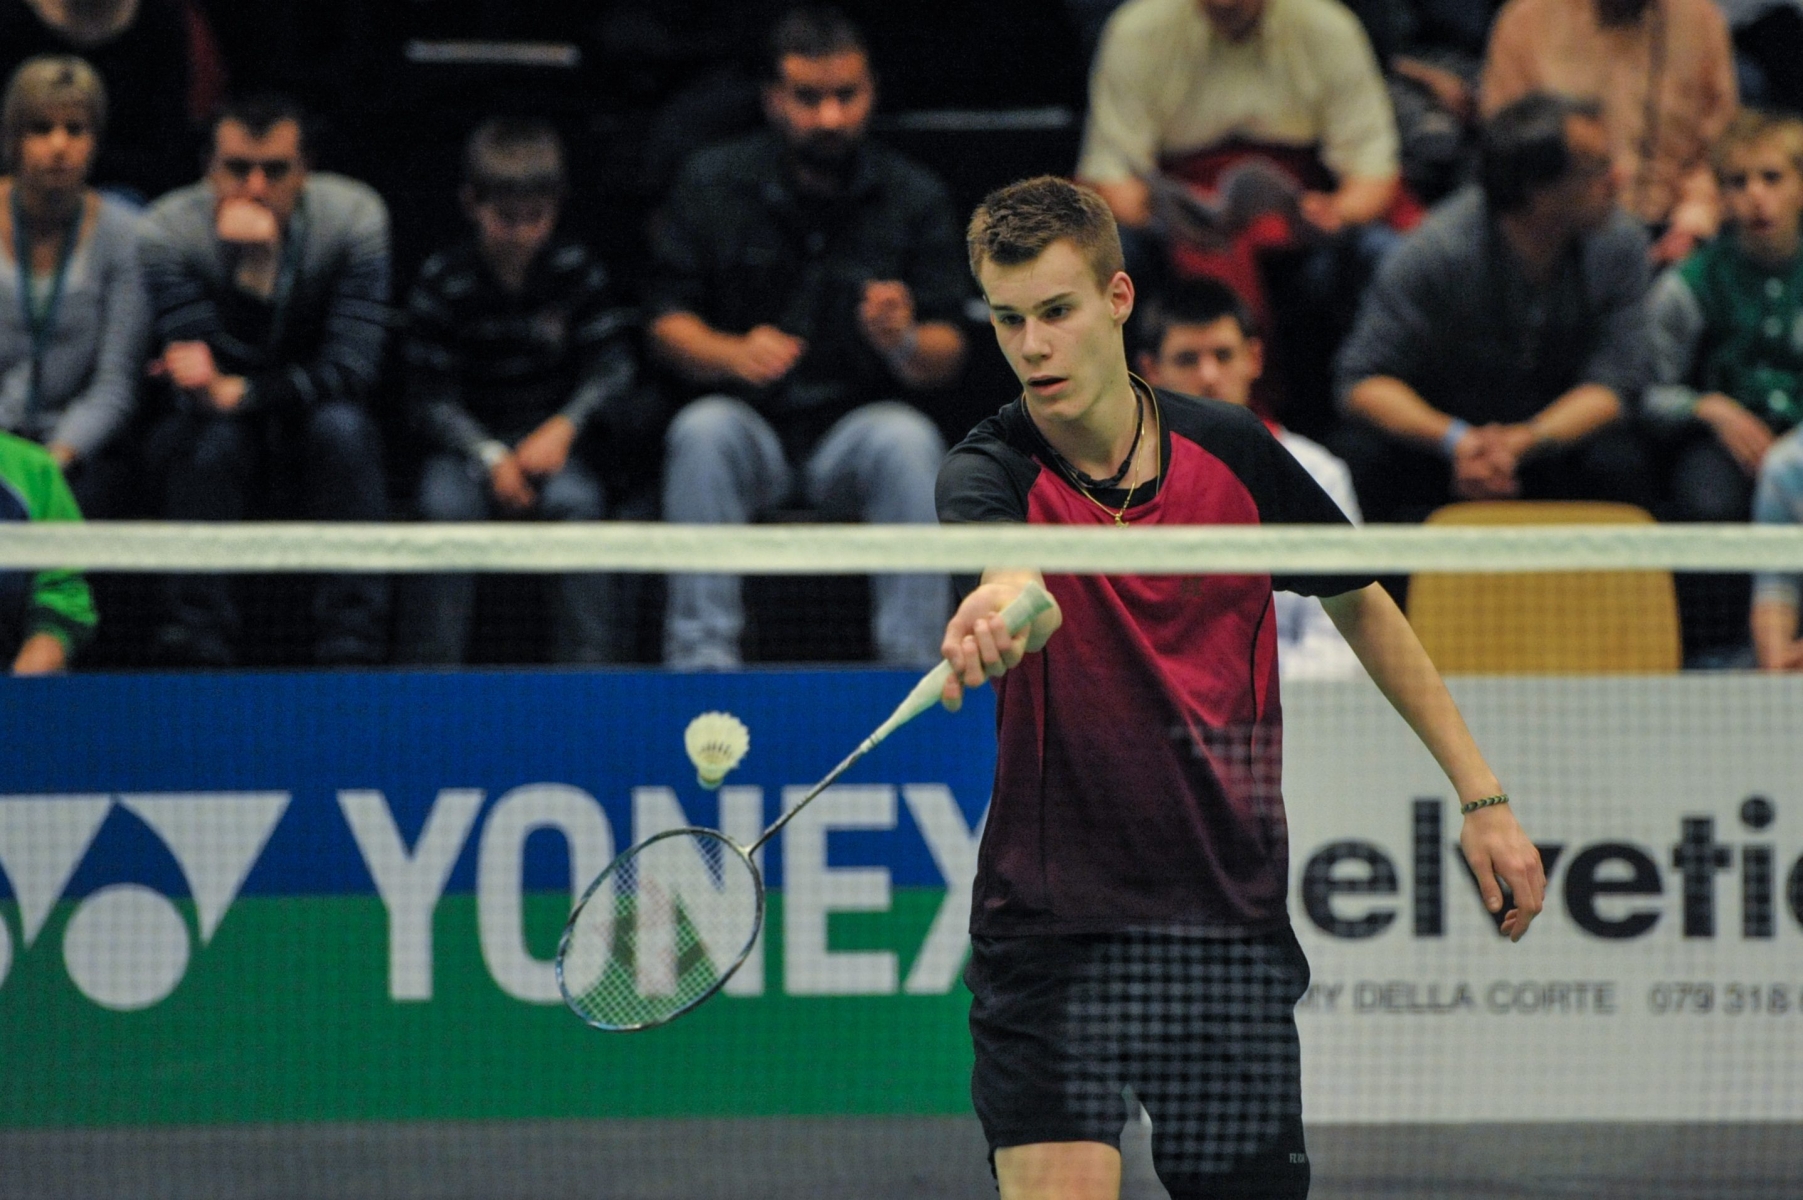 Badminton, CHAMPIONNAT SUISSE.
Mathias Bonny

LA CHAUX-DE-FONDS
02.02.2013
PHOTO: CHRISTIAN GALLEY